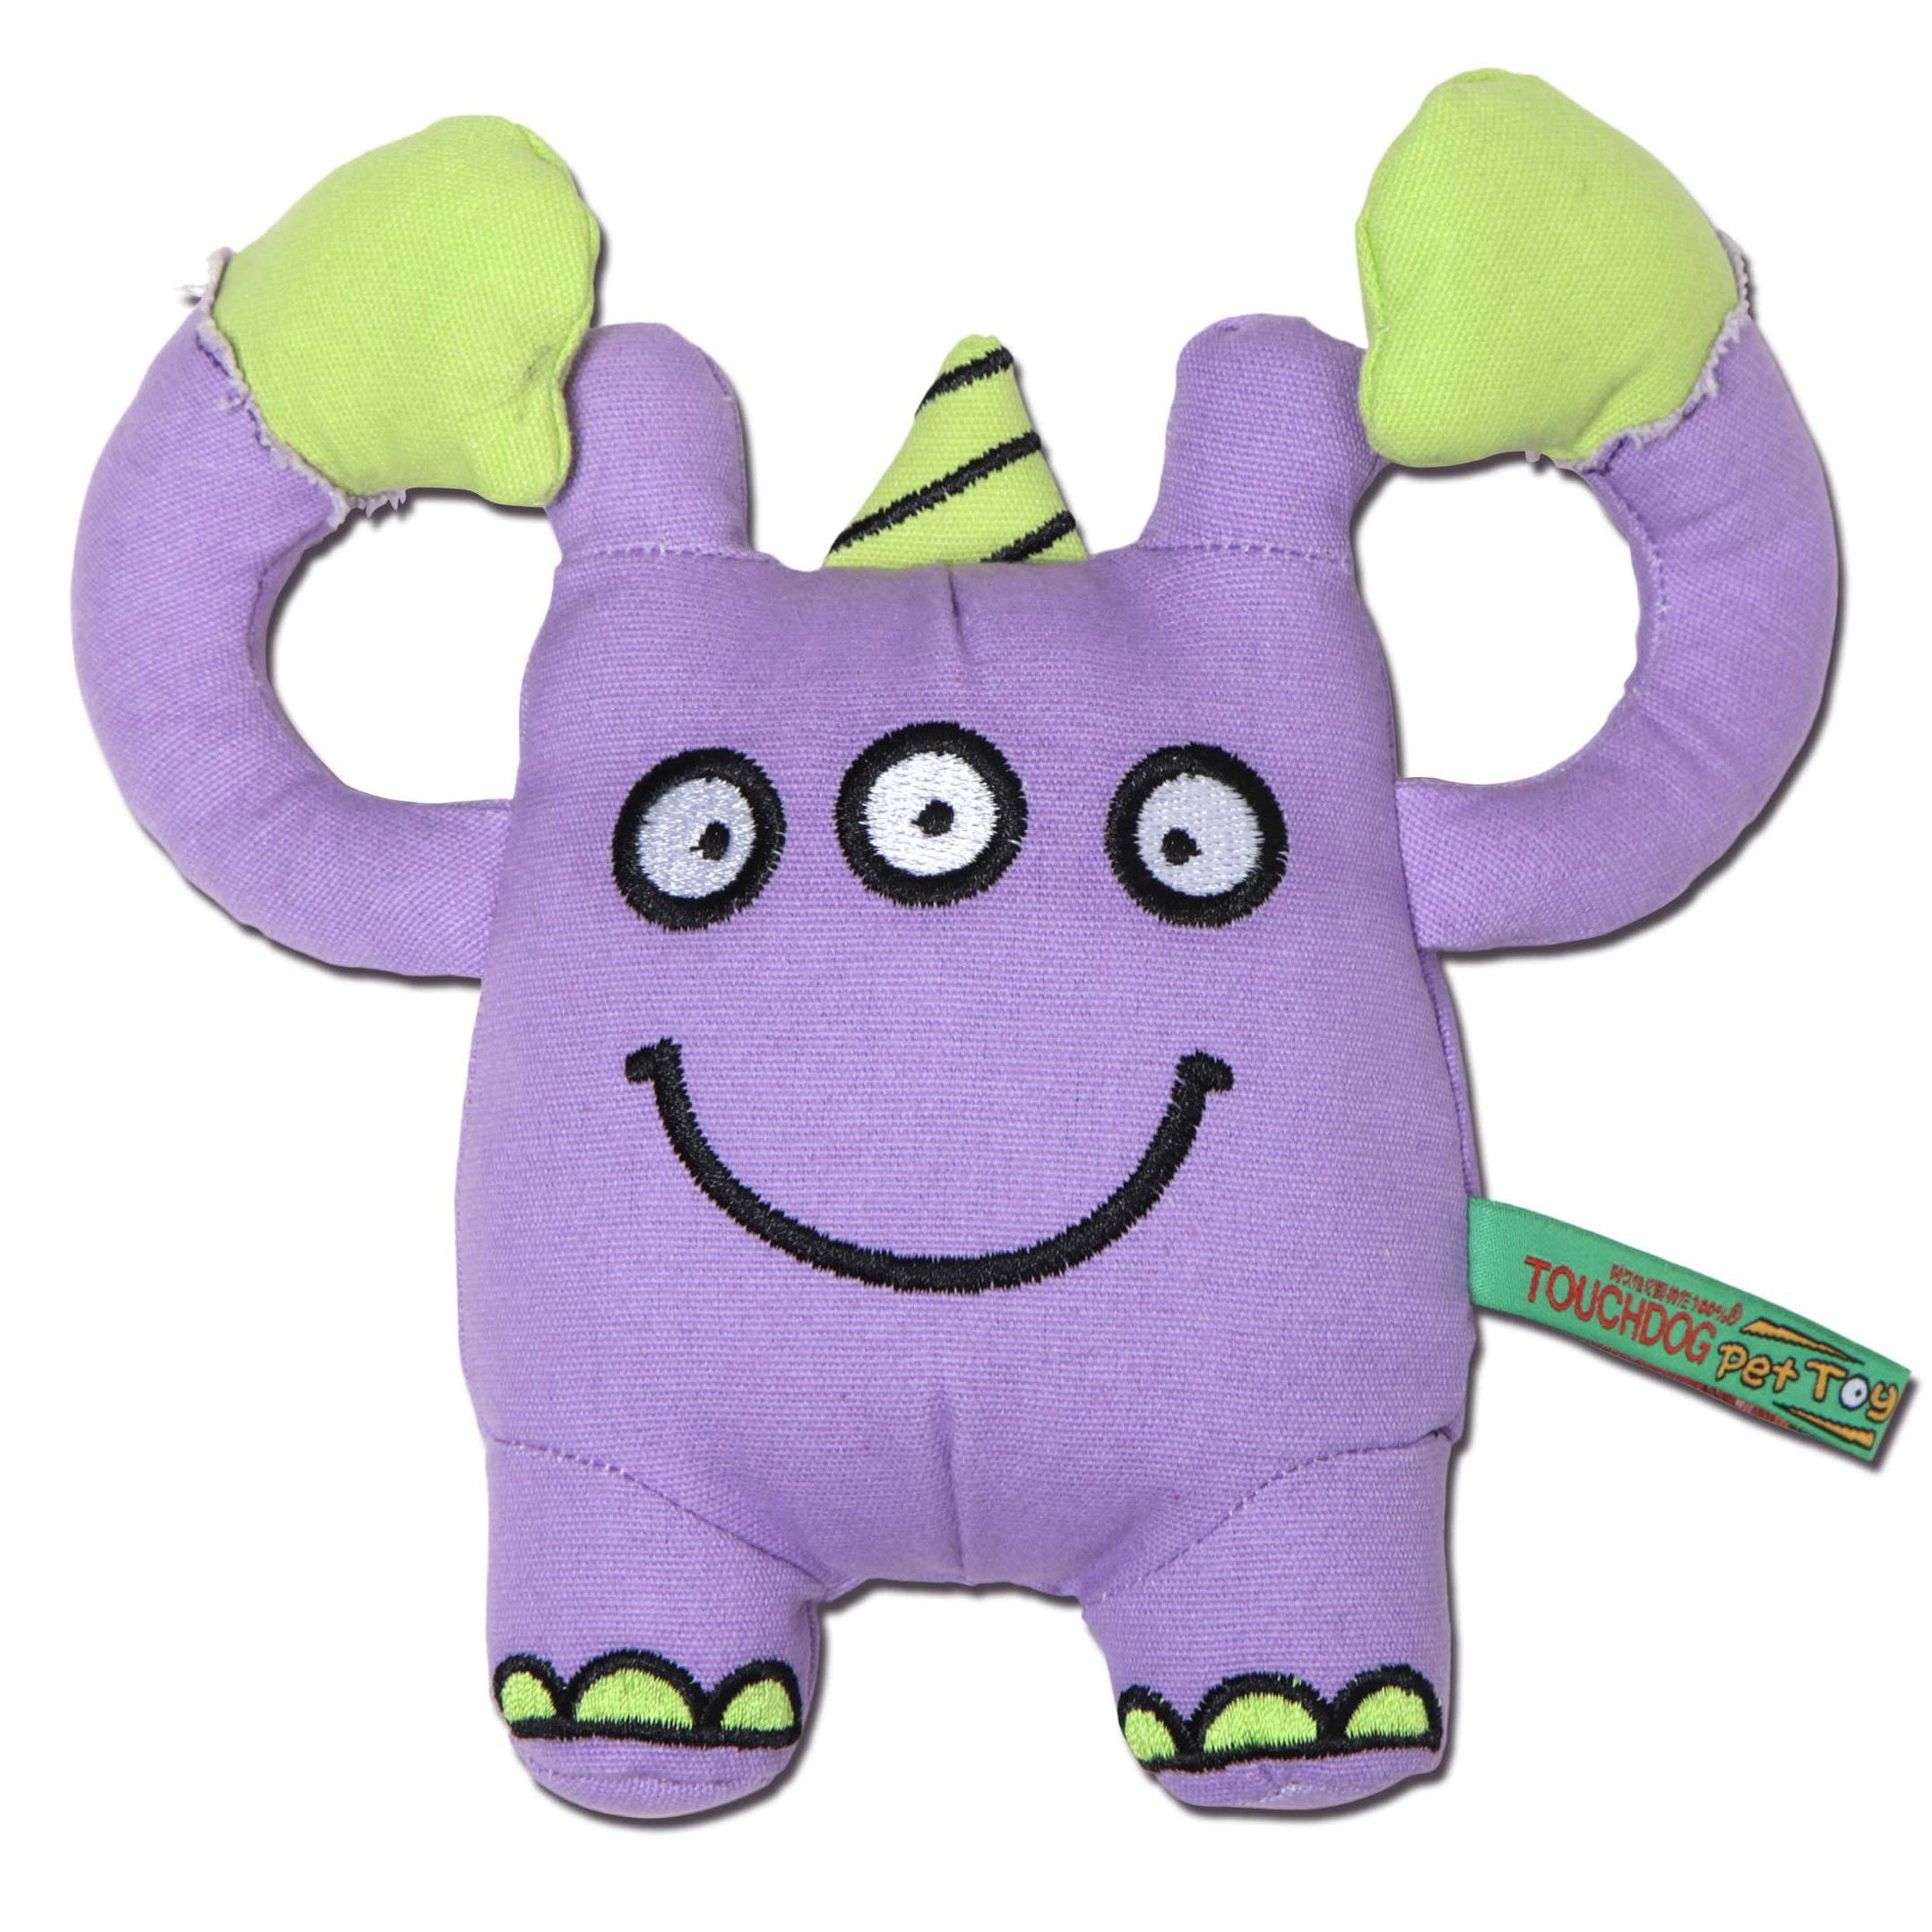 Touchdog Cartoon Three-Eyed Monster Plush Dog Toy - Purple